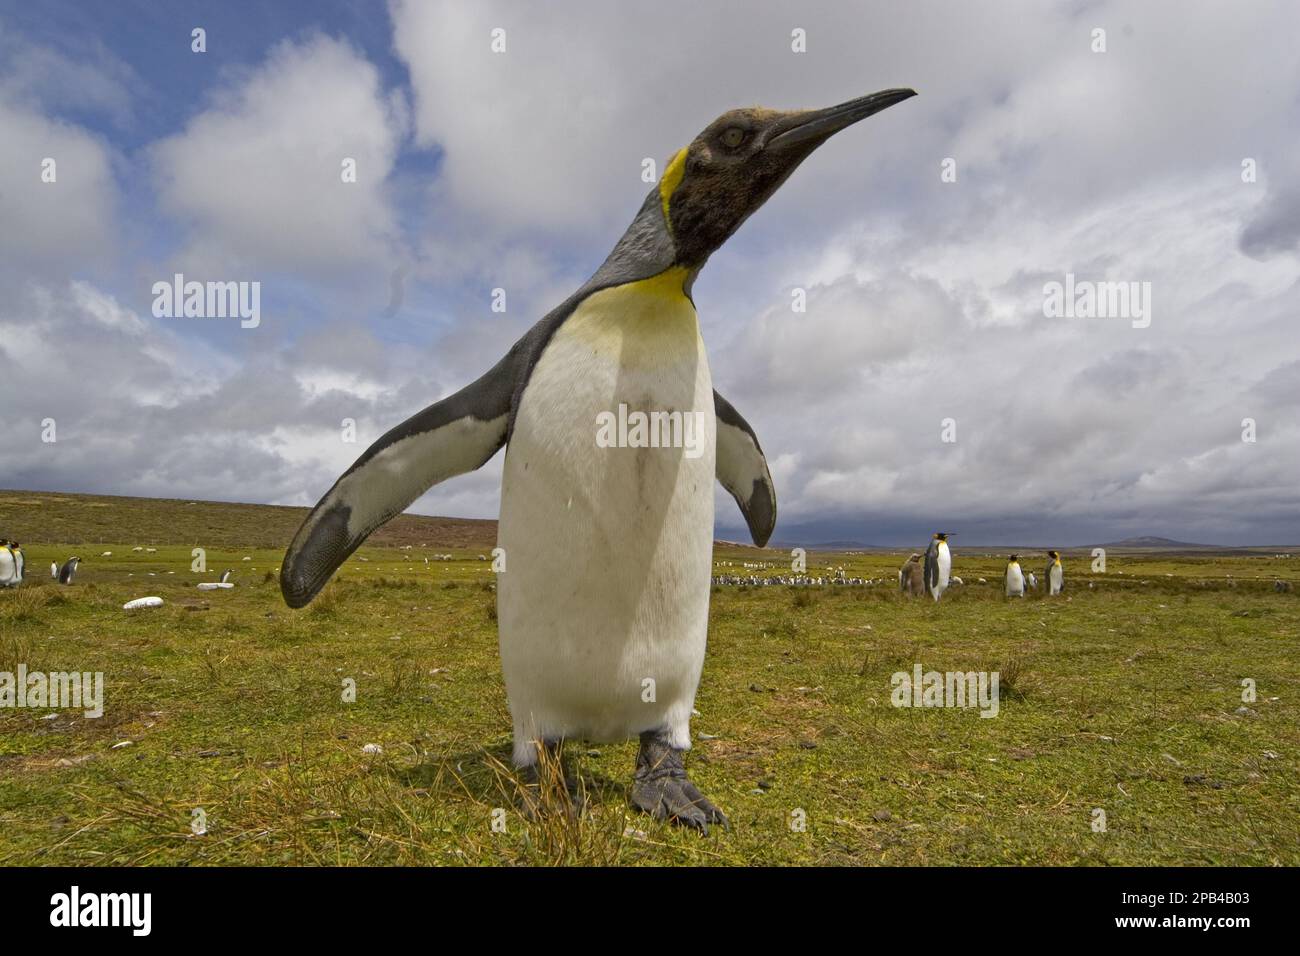 Patagonica, Königspinguin (Aptenodytes patagonicus), große Pinguine (Aptenodytes), Pinguine, Tiere, Vögel, König Pinguin, fotografiert mit einem breiten Winkel Stockfoto